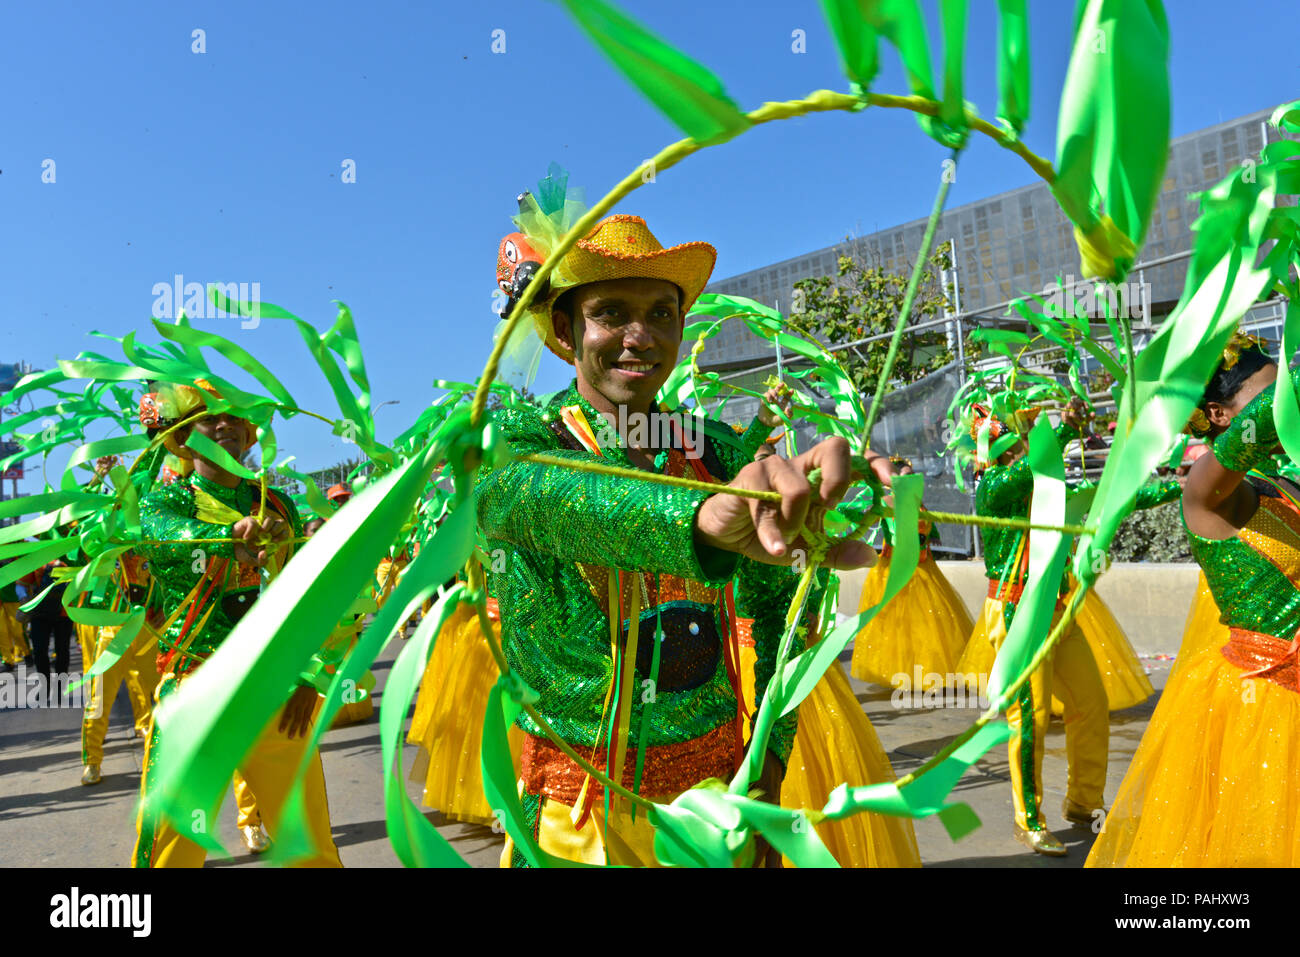 Schlacht von Blumen, Barranquilla Karneval. Stockfoto